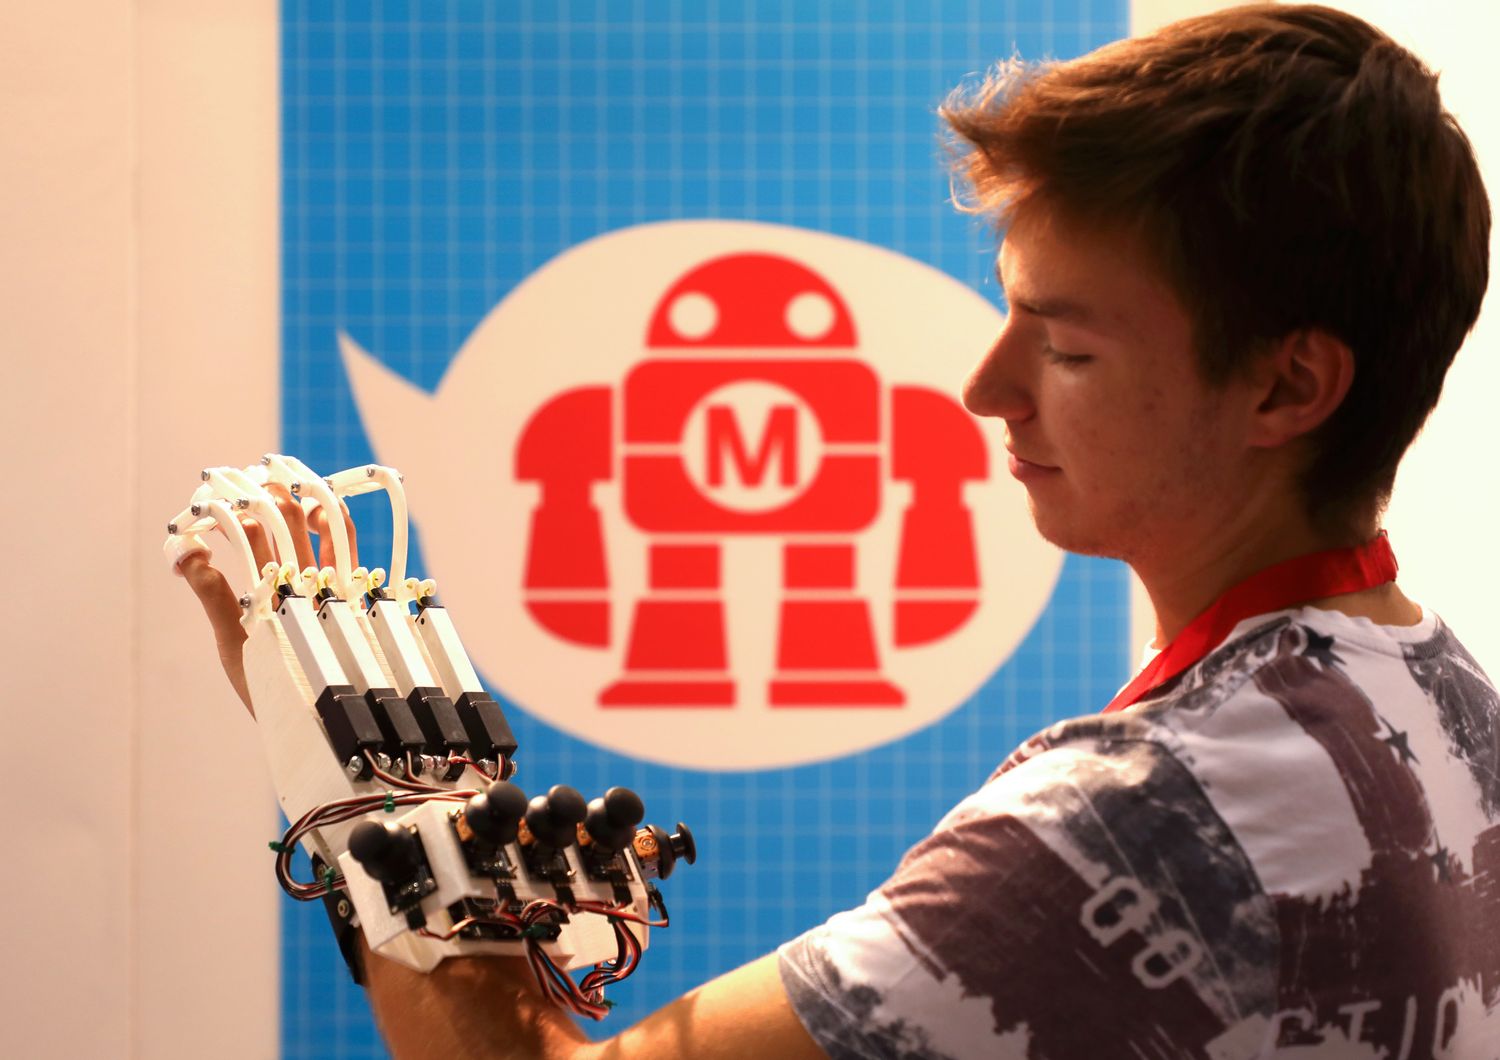 &nbsp;Una mano robotica presentata alla Maker Faire Roma 2018